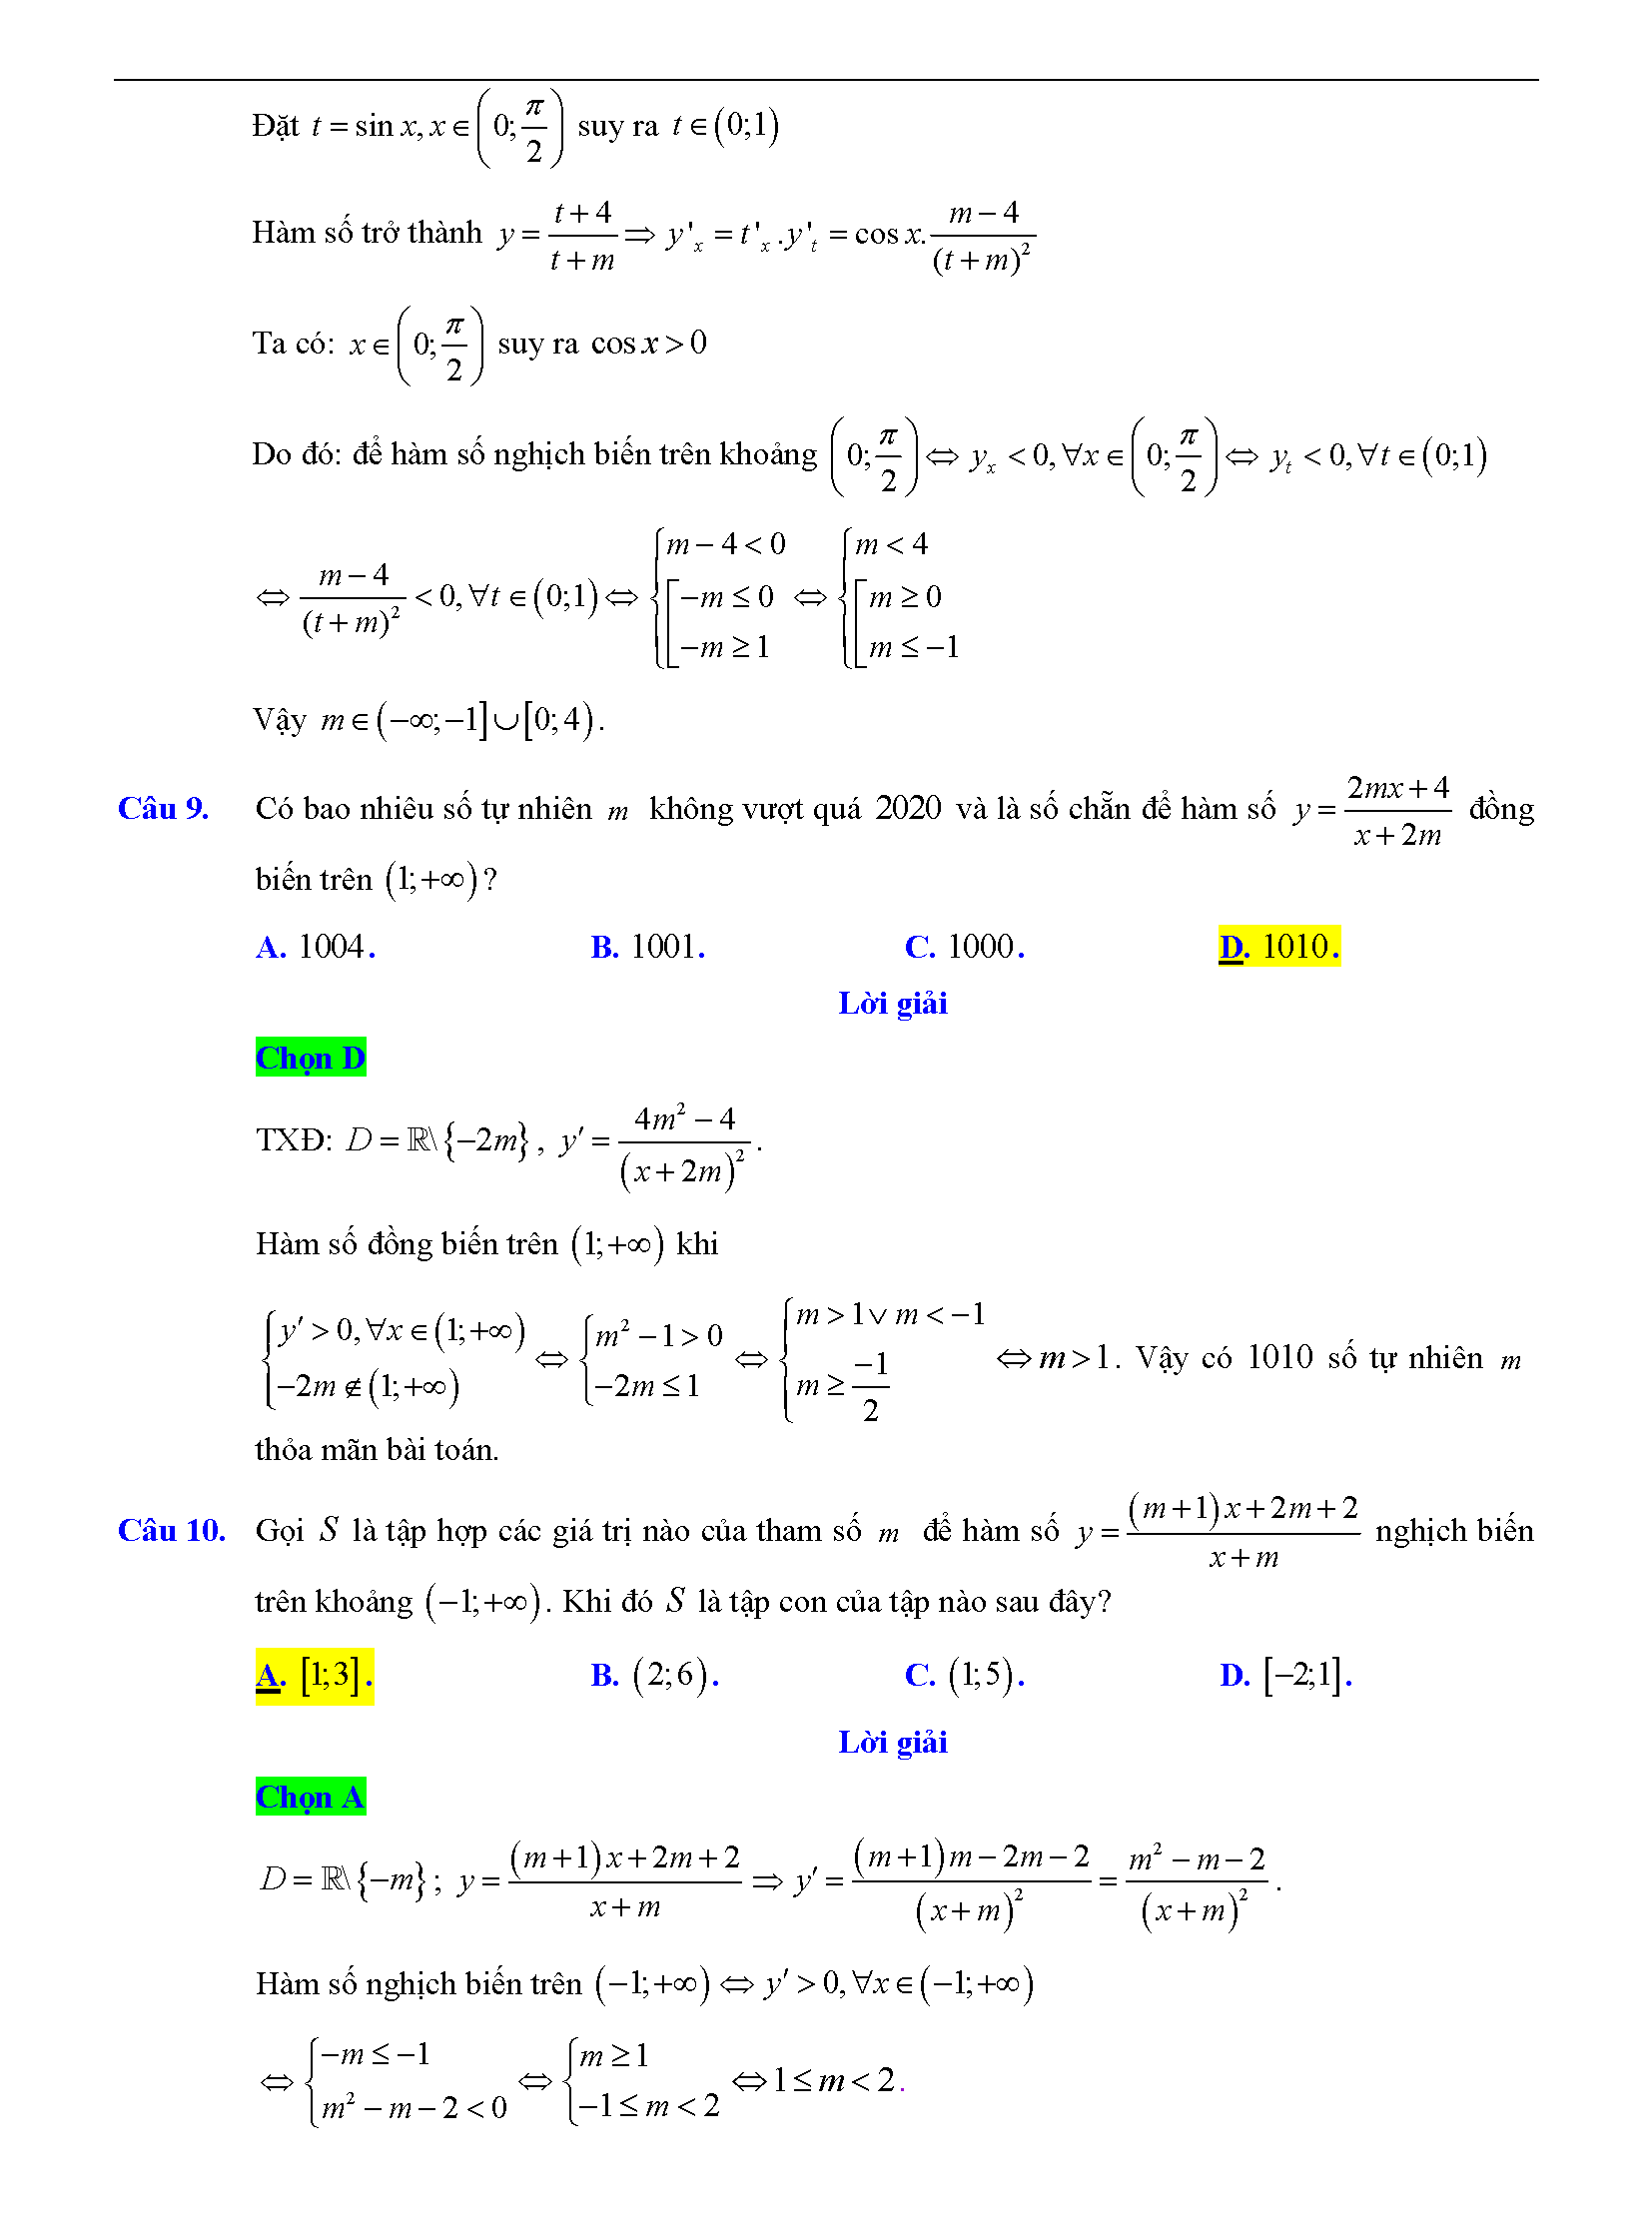 Trắc nghiệm tìm m để hàm số đơn điệu 10